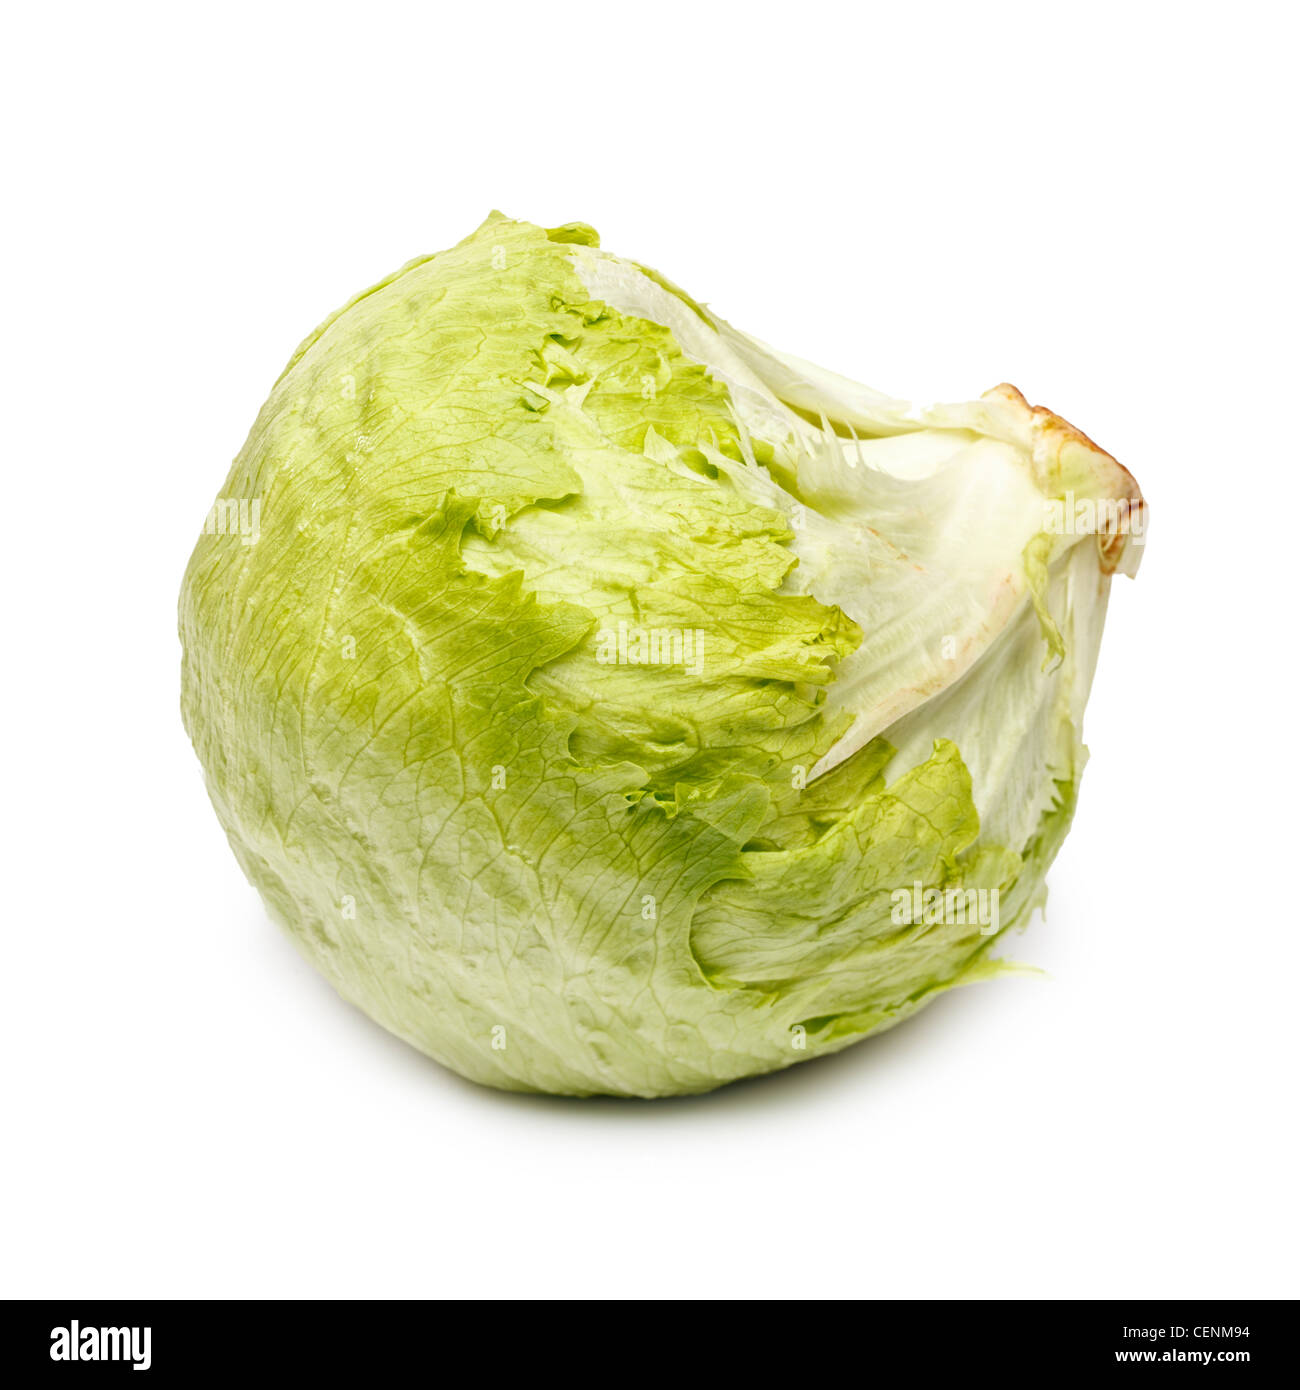 Iceberg or crisphead lettuce on white background Stock Photo